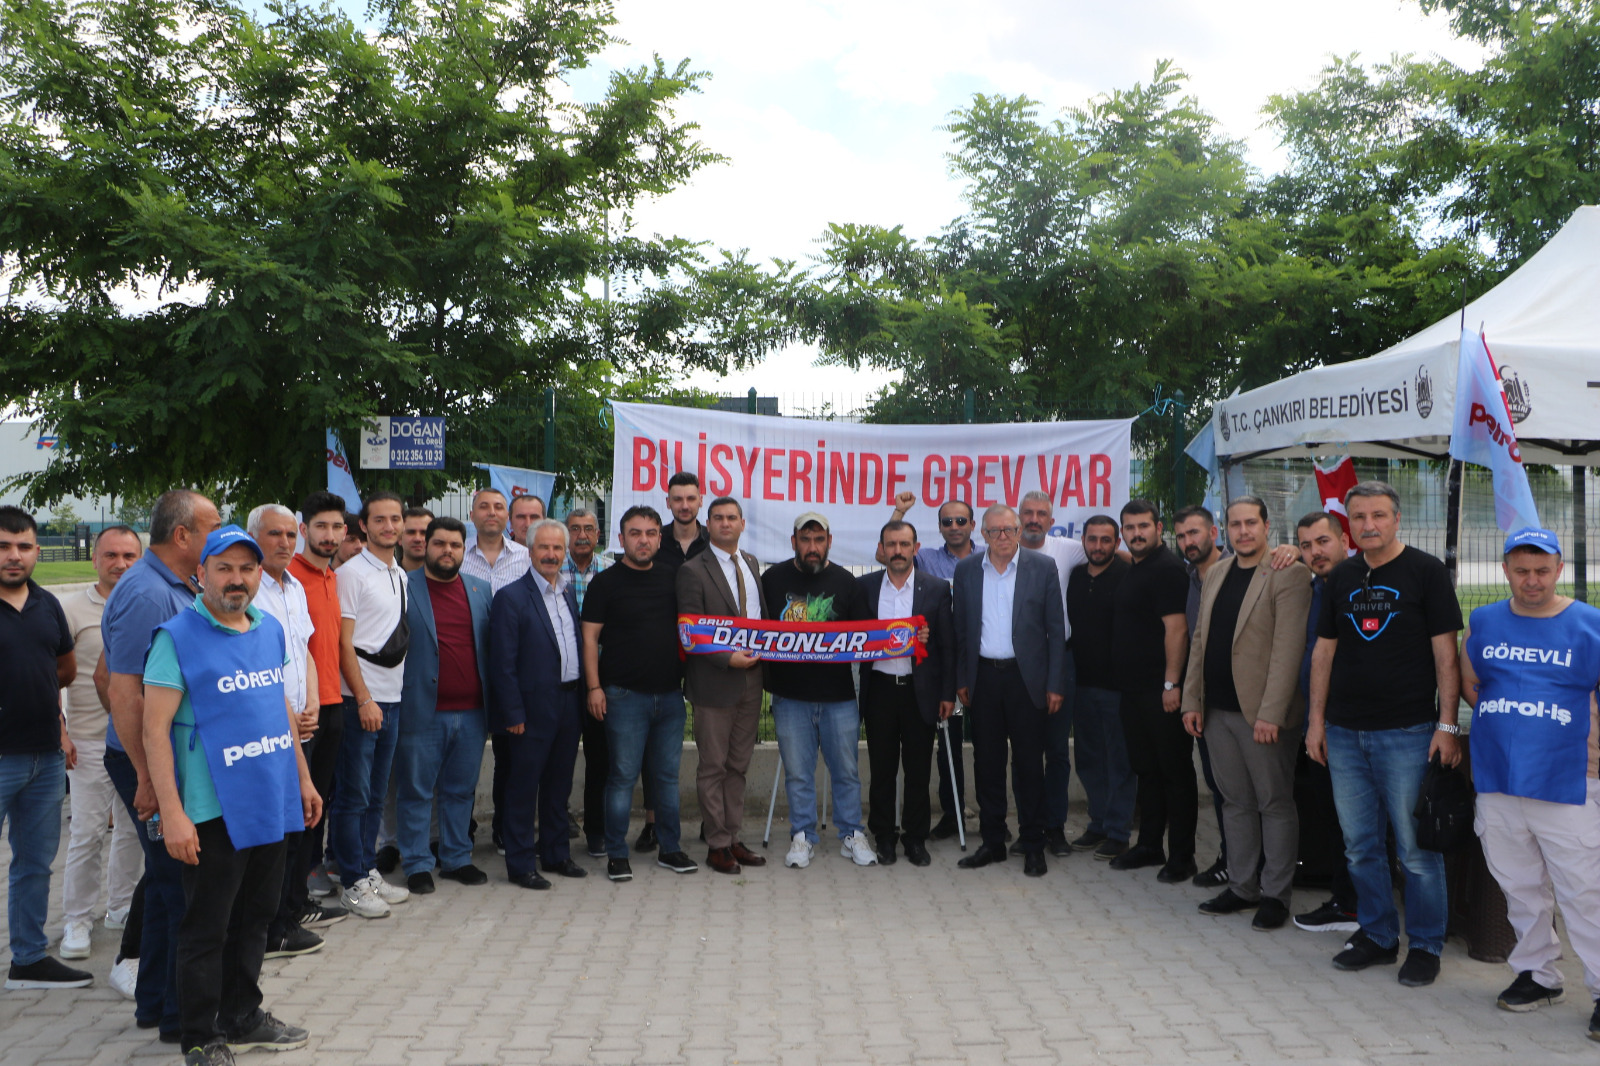 kirikkale-sumitomo-iscisi-cankiri-lastik-fabrikasi-destek-7 Kırıkkale'den Çankırı Lastik Fabrikası İşçisine Destek: Zafer Direnen Emekçinin Olacak